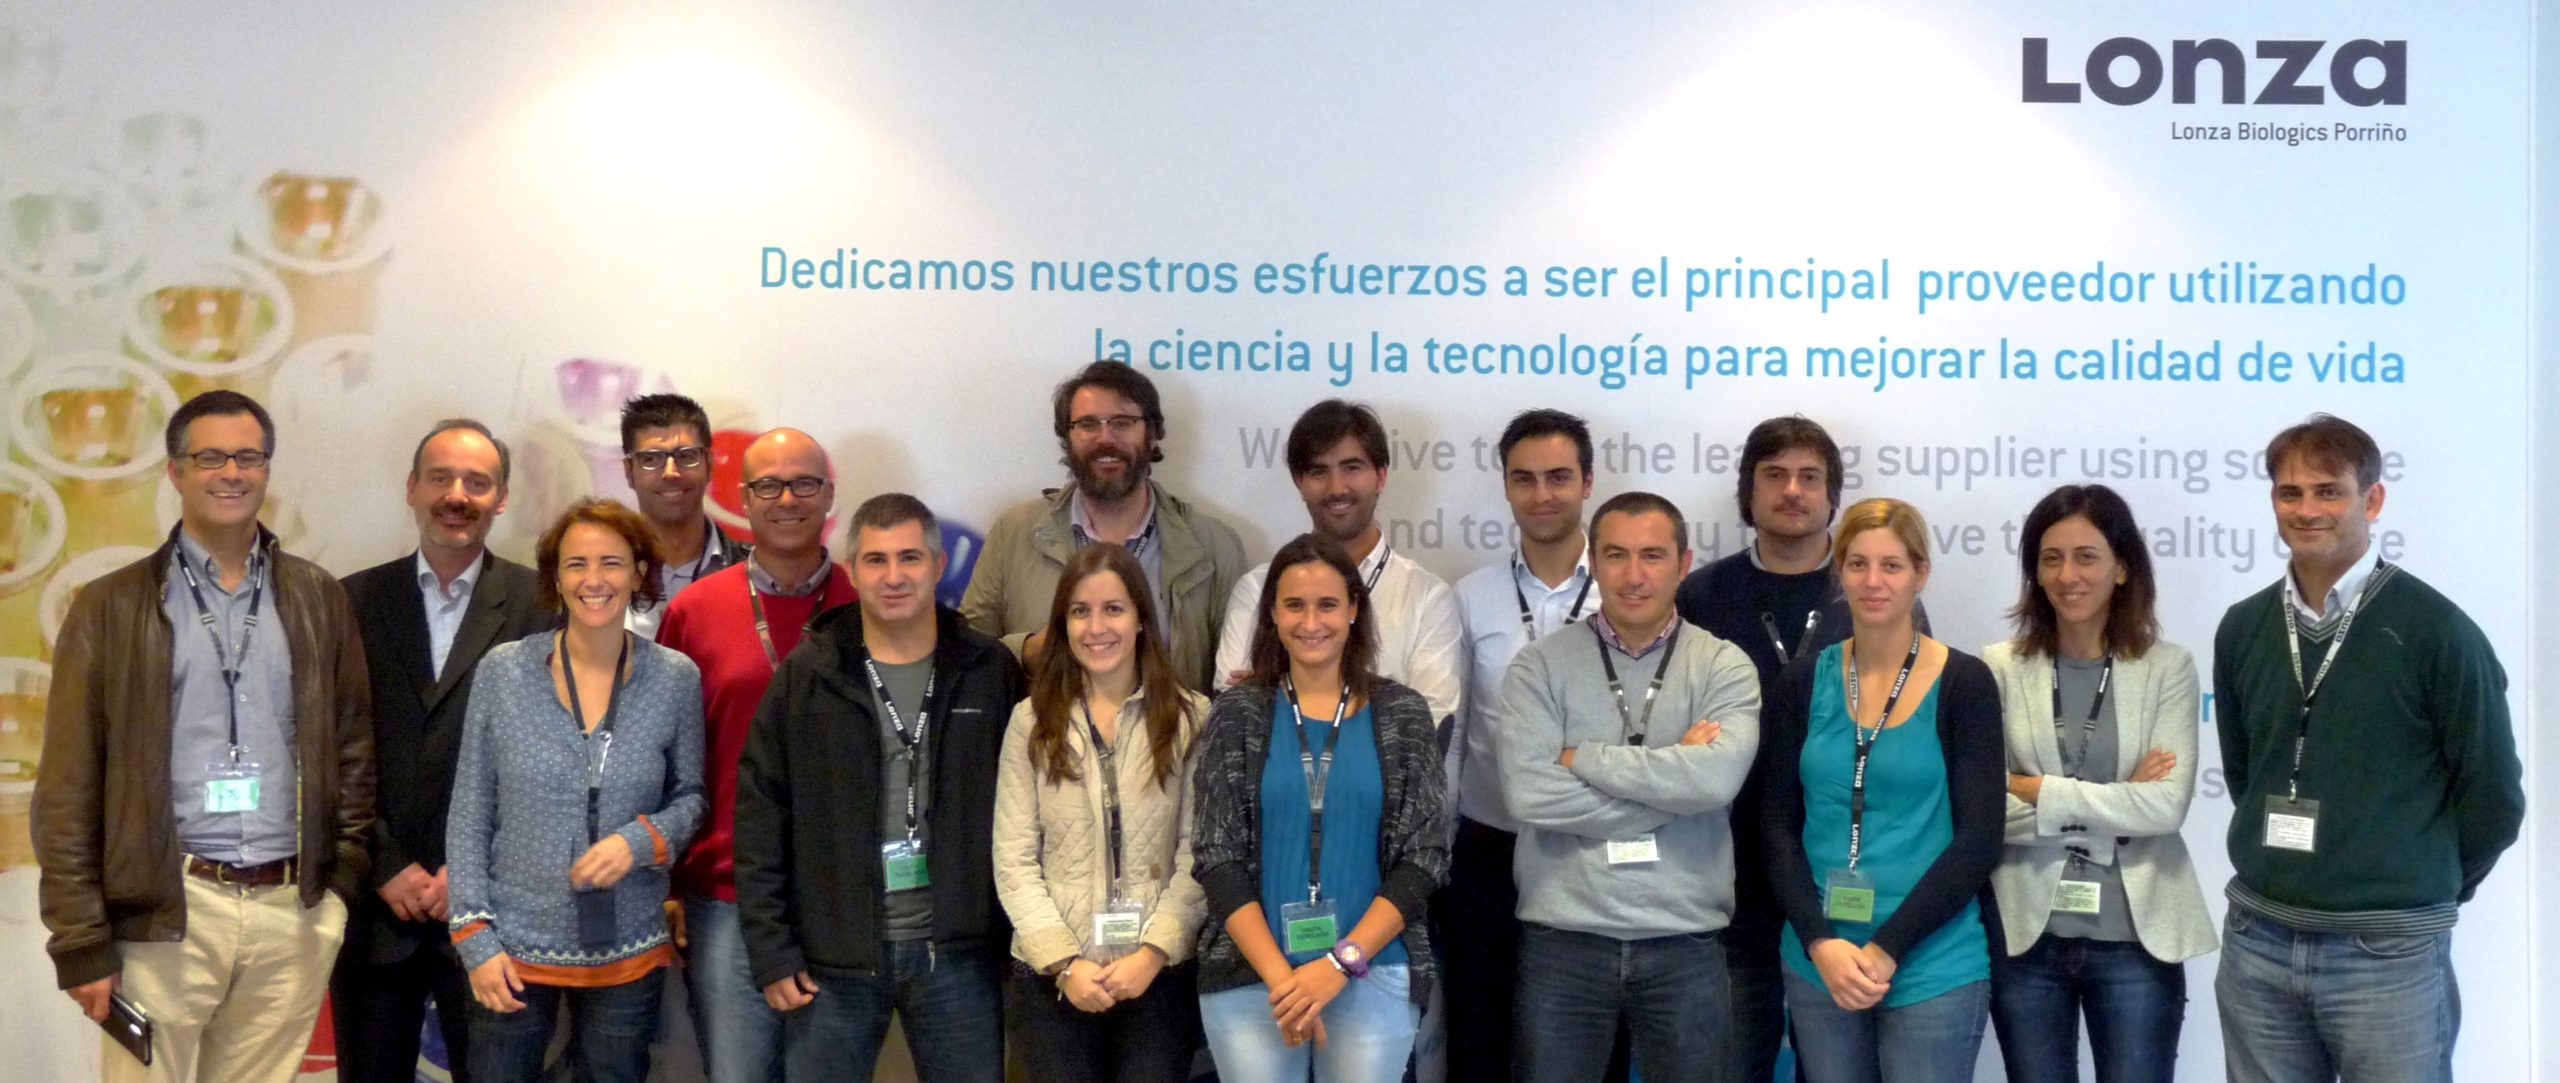 La Red de Expertos Lean de CEAGA durante la visita a Lonza Biologics Porriño.